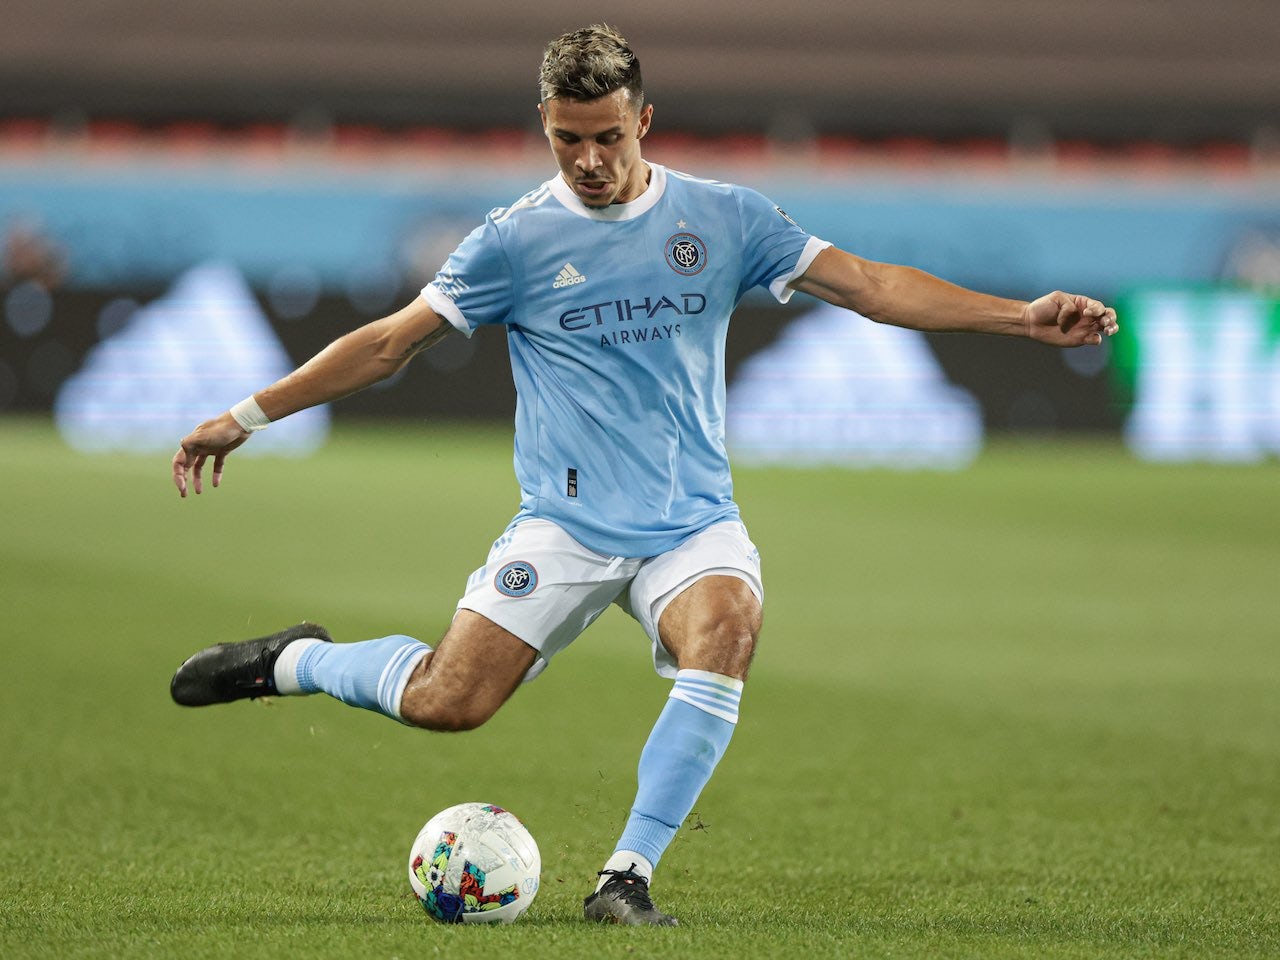 New York City FC 2022 MLS season preview: Tactics, predicted XI, predictions